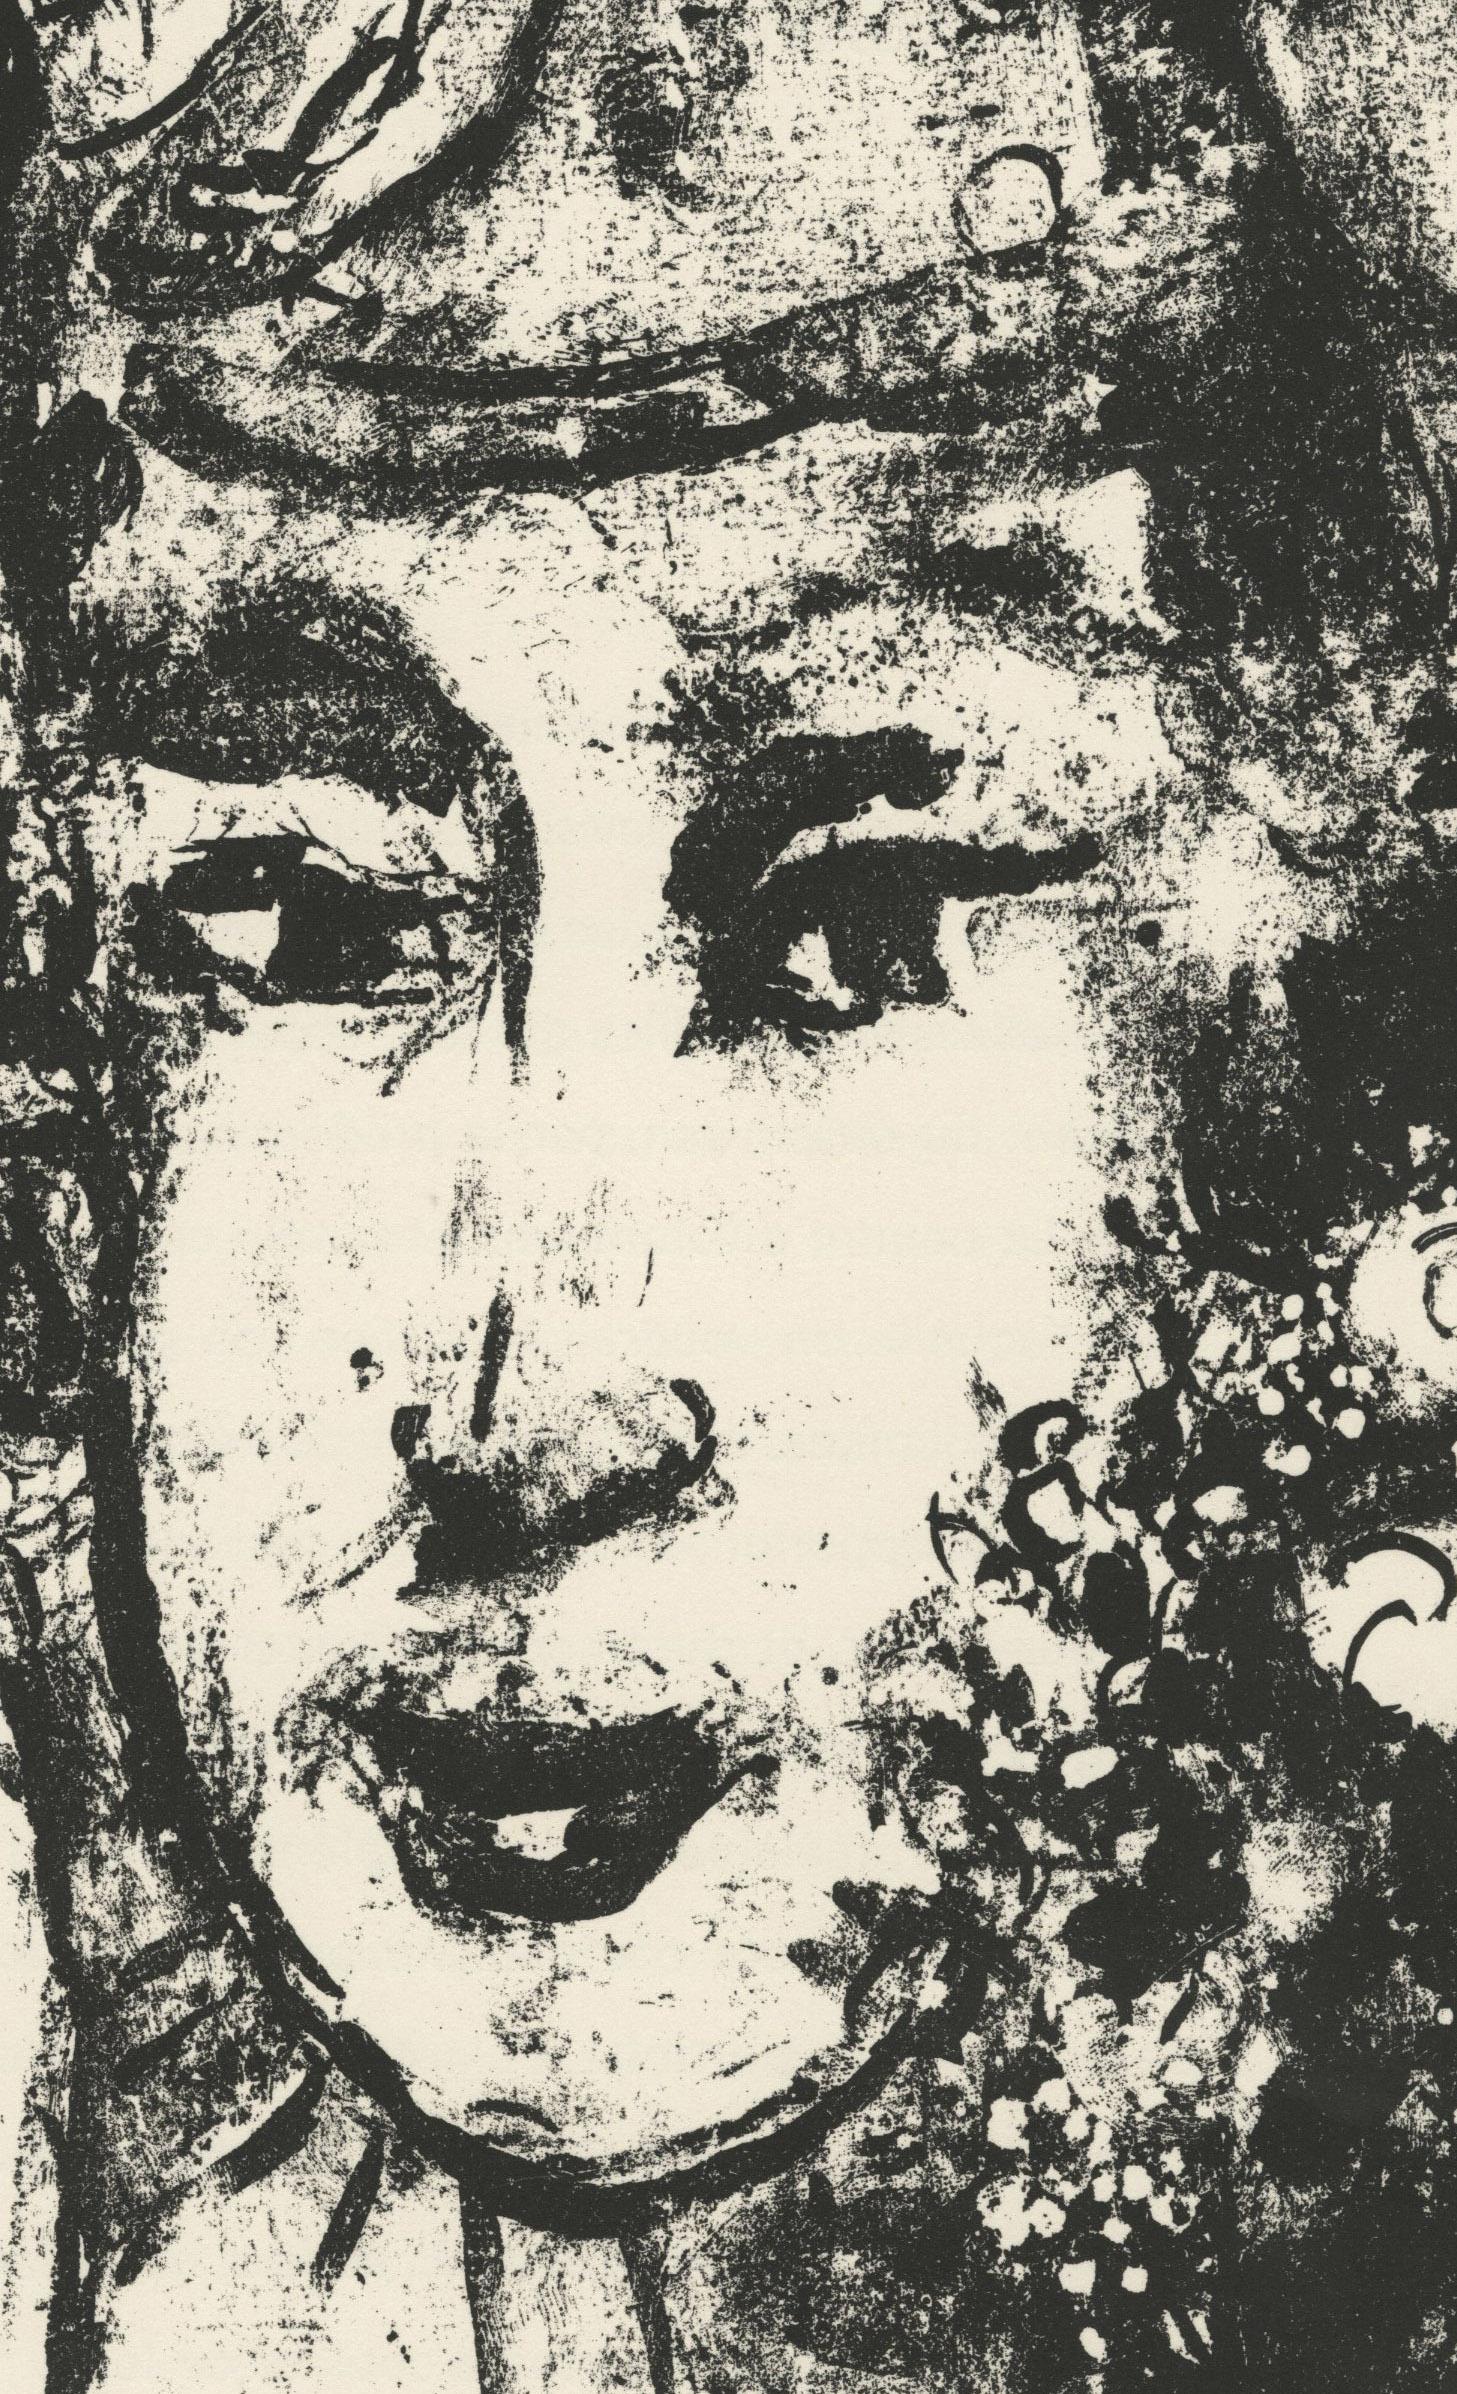 Le Clown Blanc (Das weiße Clown)
Lithographie, 1964
Unsigniert (wie von DLM ausgestellt)
Aus: Derriere le Miroir Chagall: Dessins et Lavis, Exposition Chagall, Galeries Maeght, Nr. 146, 1964
Auflage: Unbekannt (groß)
Gedruckt bei Mourlot, Paris
Aus